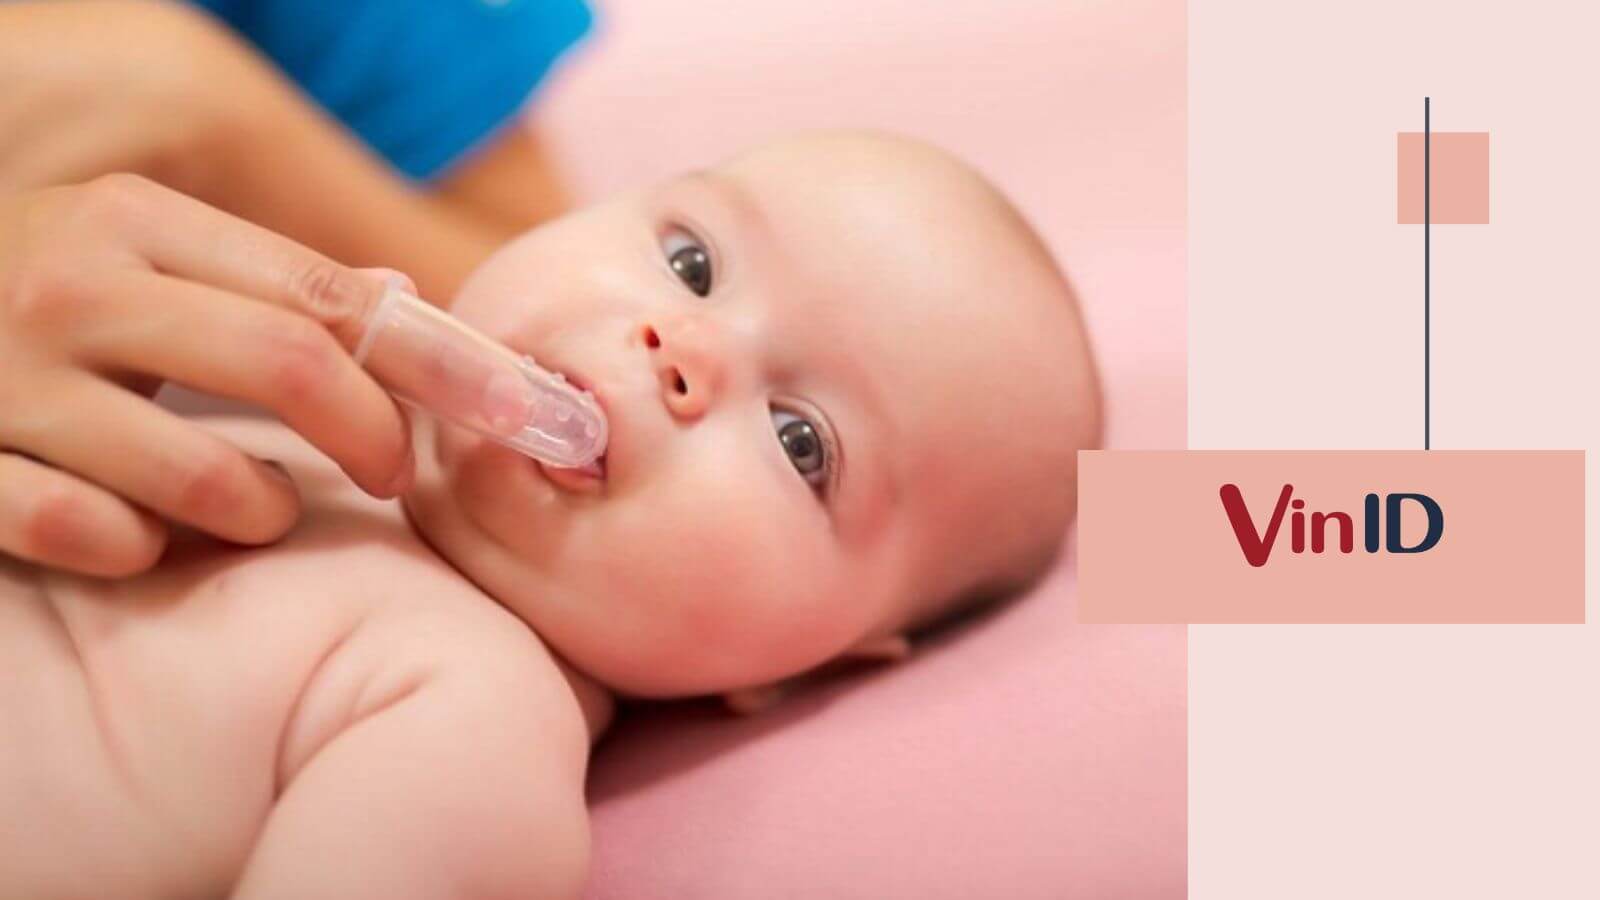 Bước chuẩn bị nào cần thực hiện trước khi vệ sinh lưỡi cho bé?
